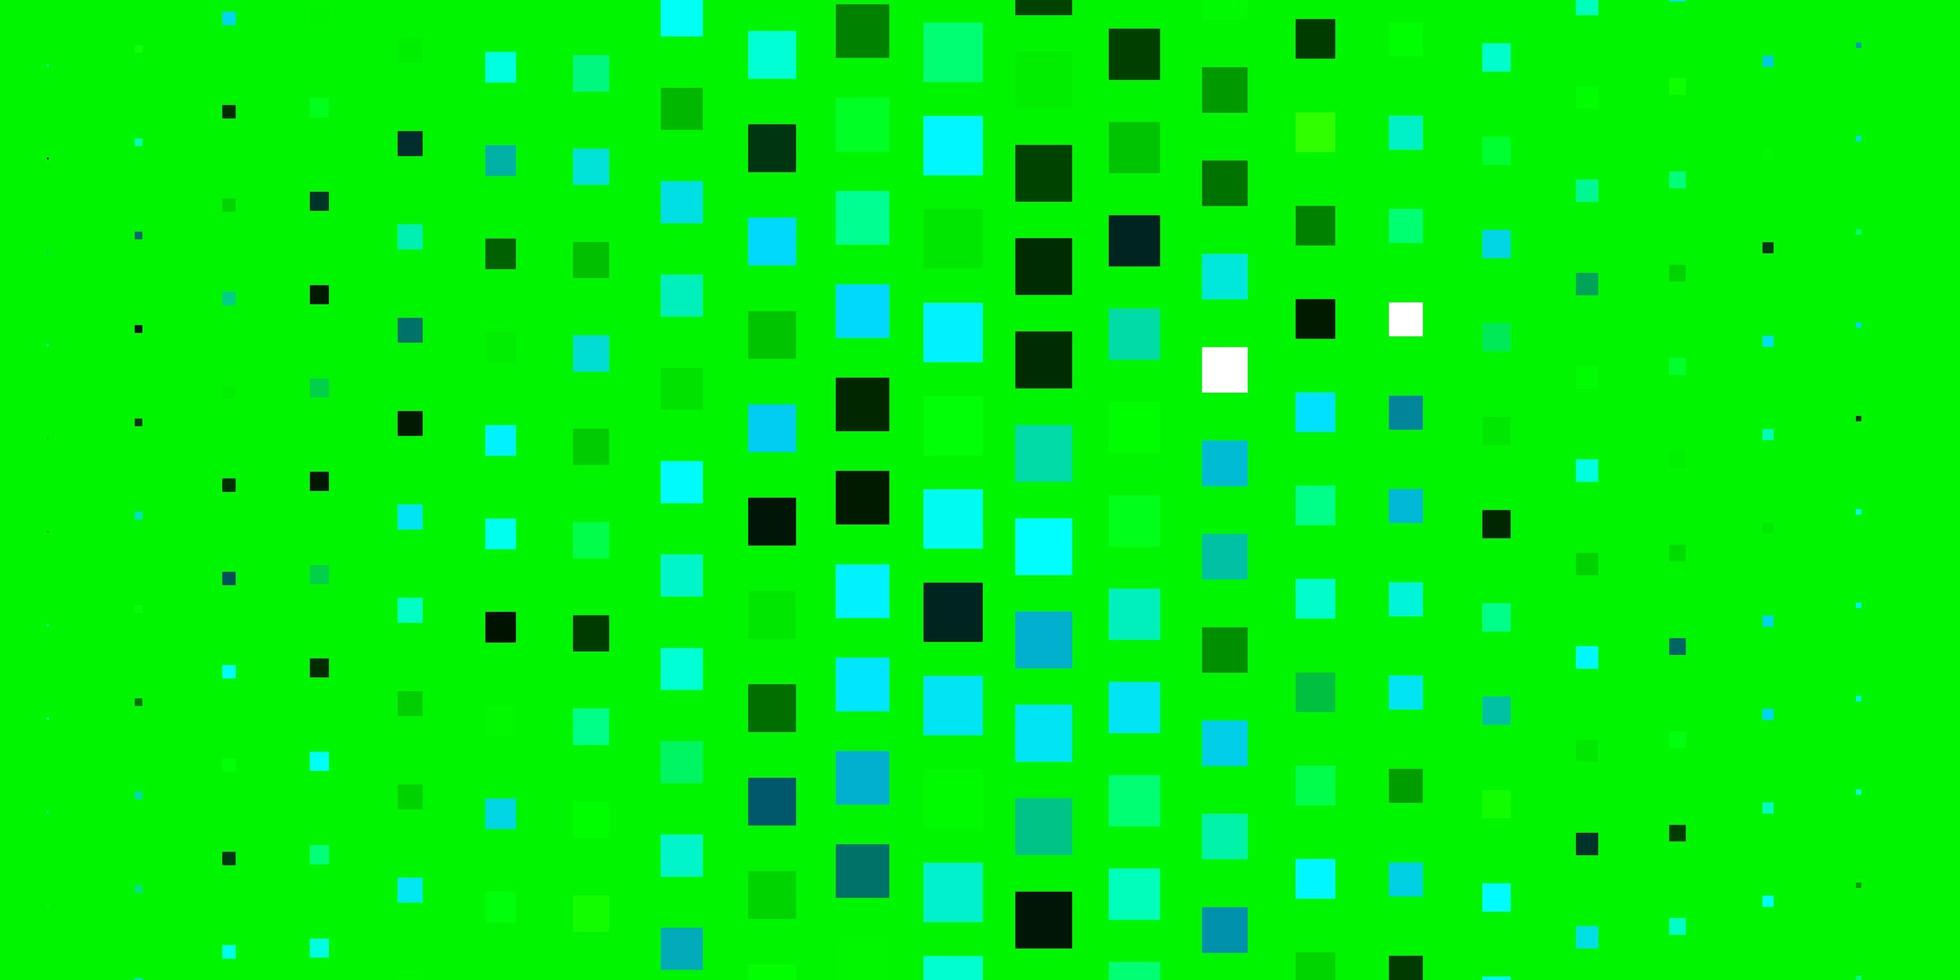 layout de vetor verde azul claro com linhas retângulos ilustração gradiente abstrata com padrão de retângulos coloridos para folhetos de livretos de negócios